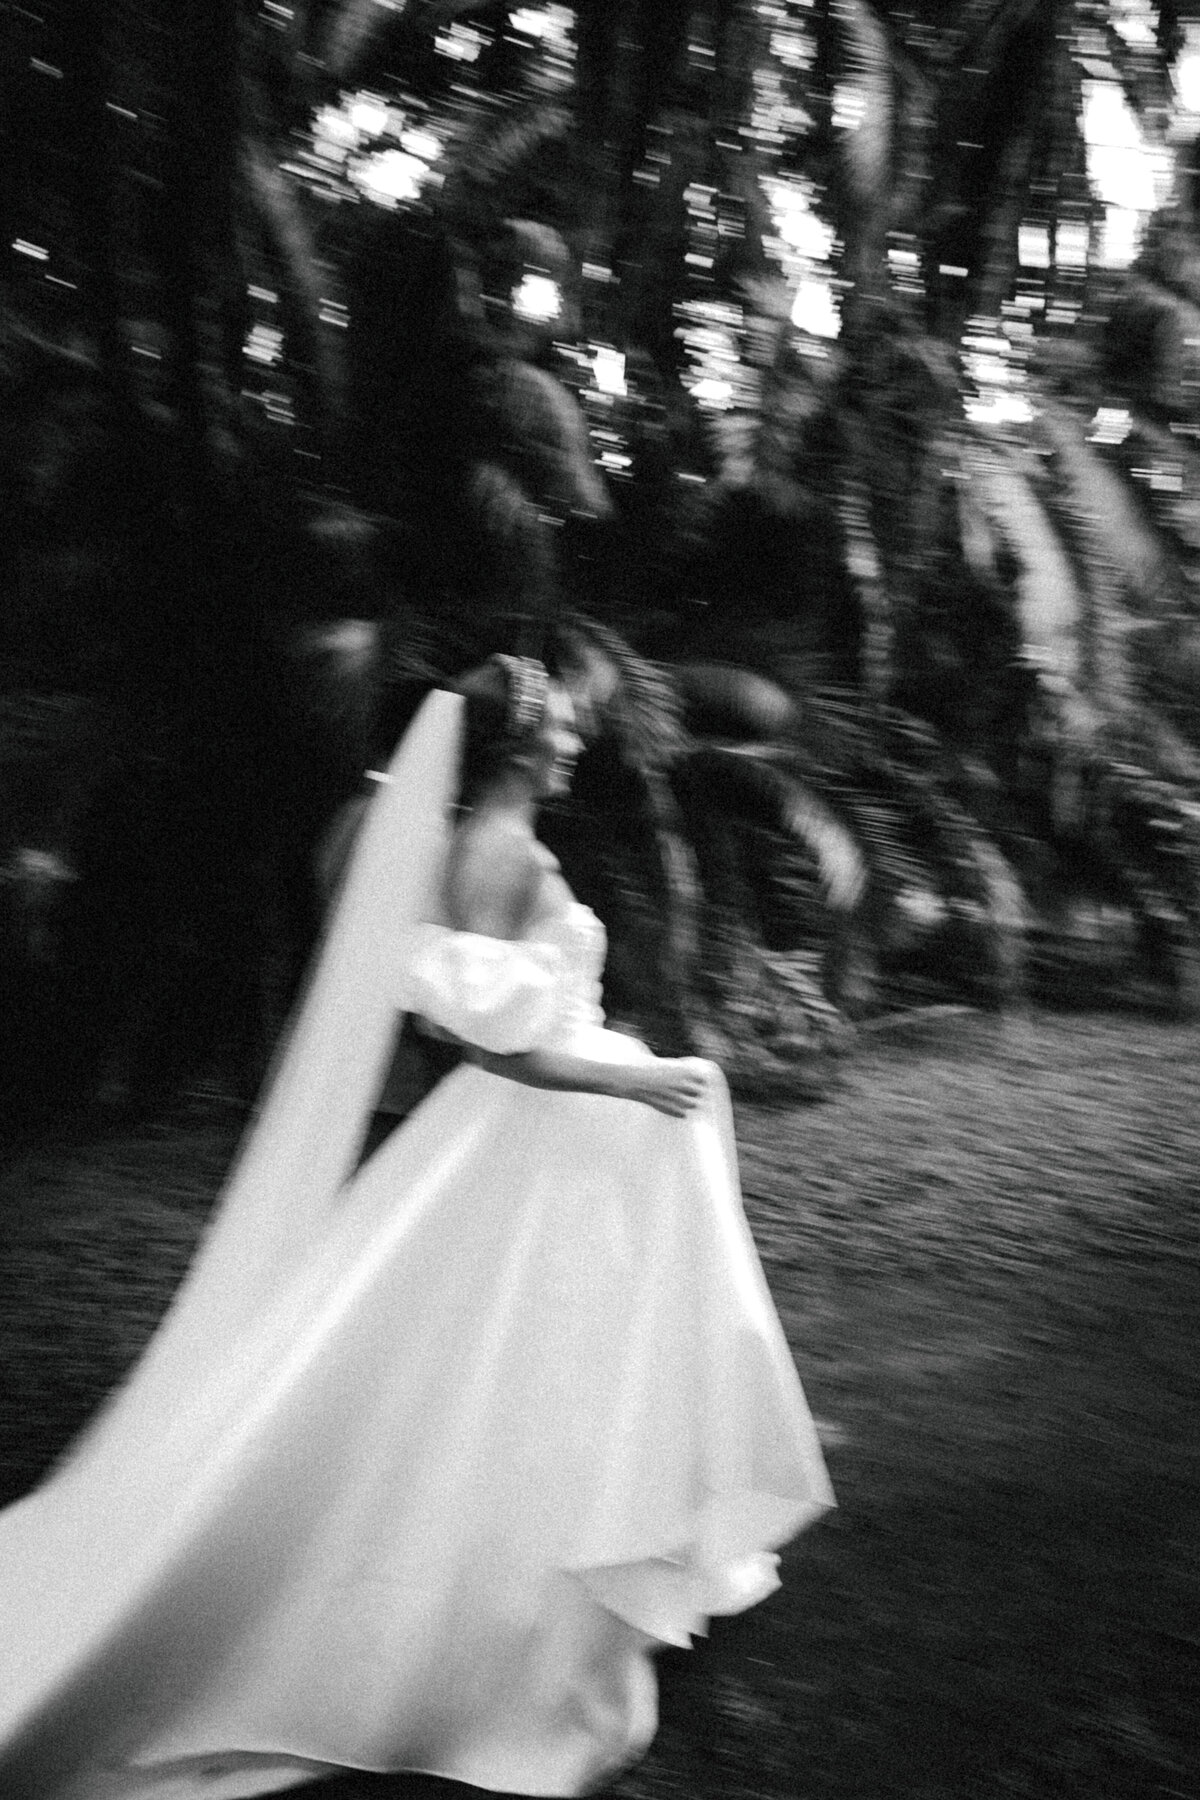 fairchild-botanical-garden-anti-bride-wedding-miami-florida-244